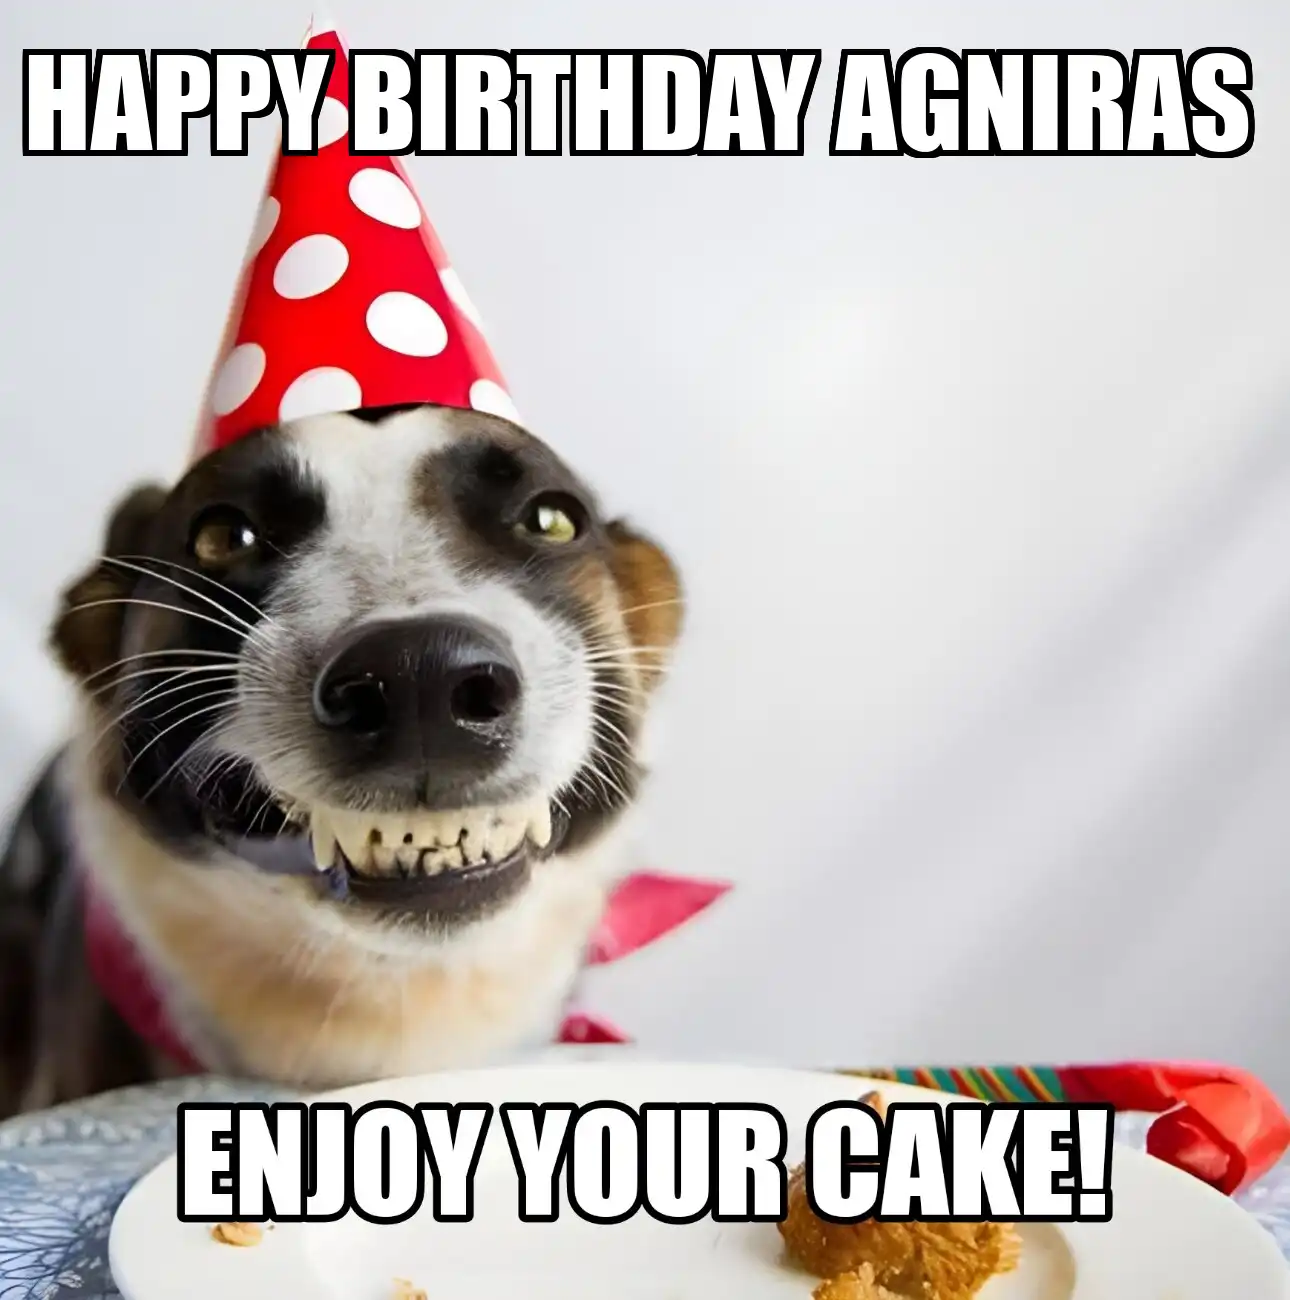 Happy Birthday Agniras Enjoy Your Cake Dog Meme